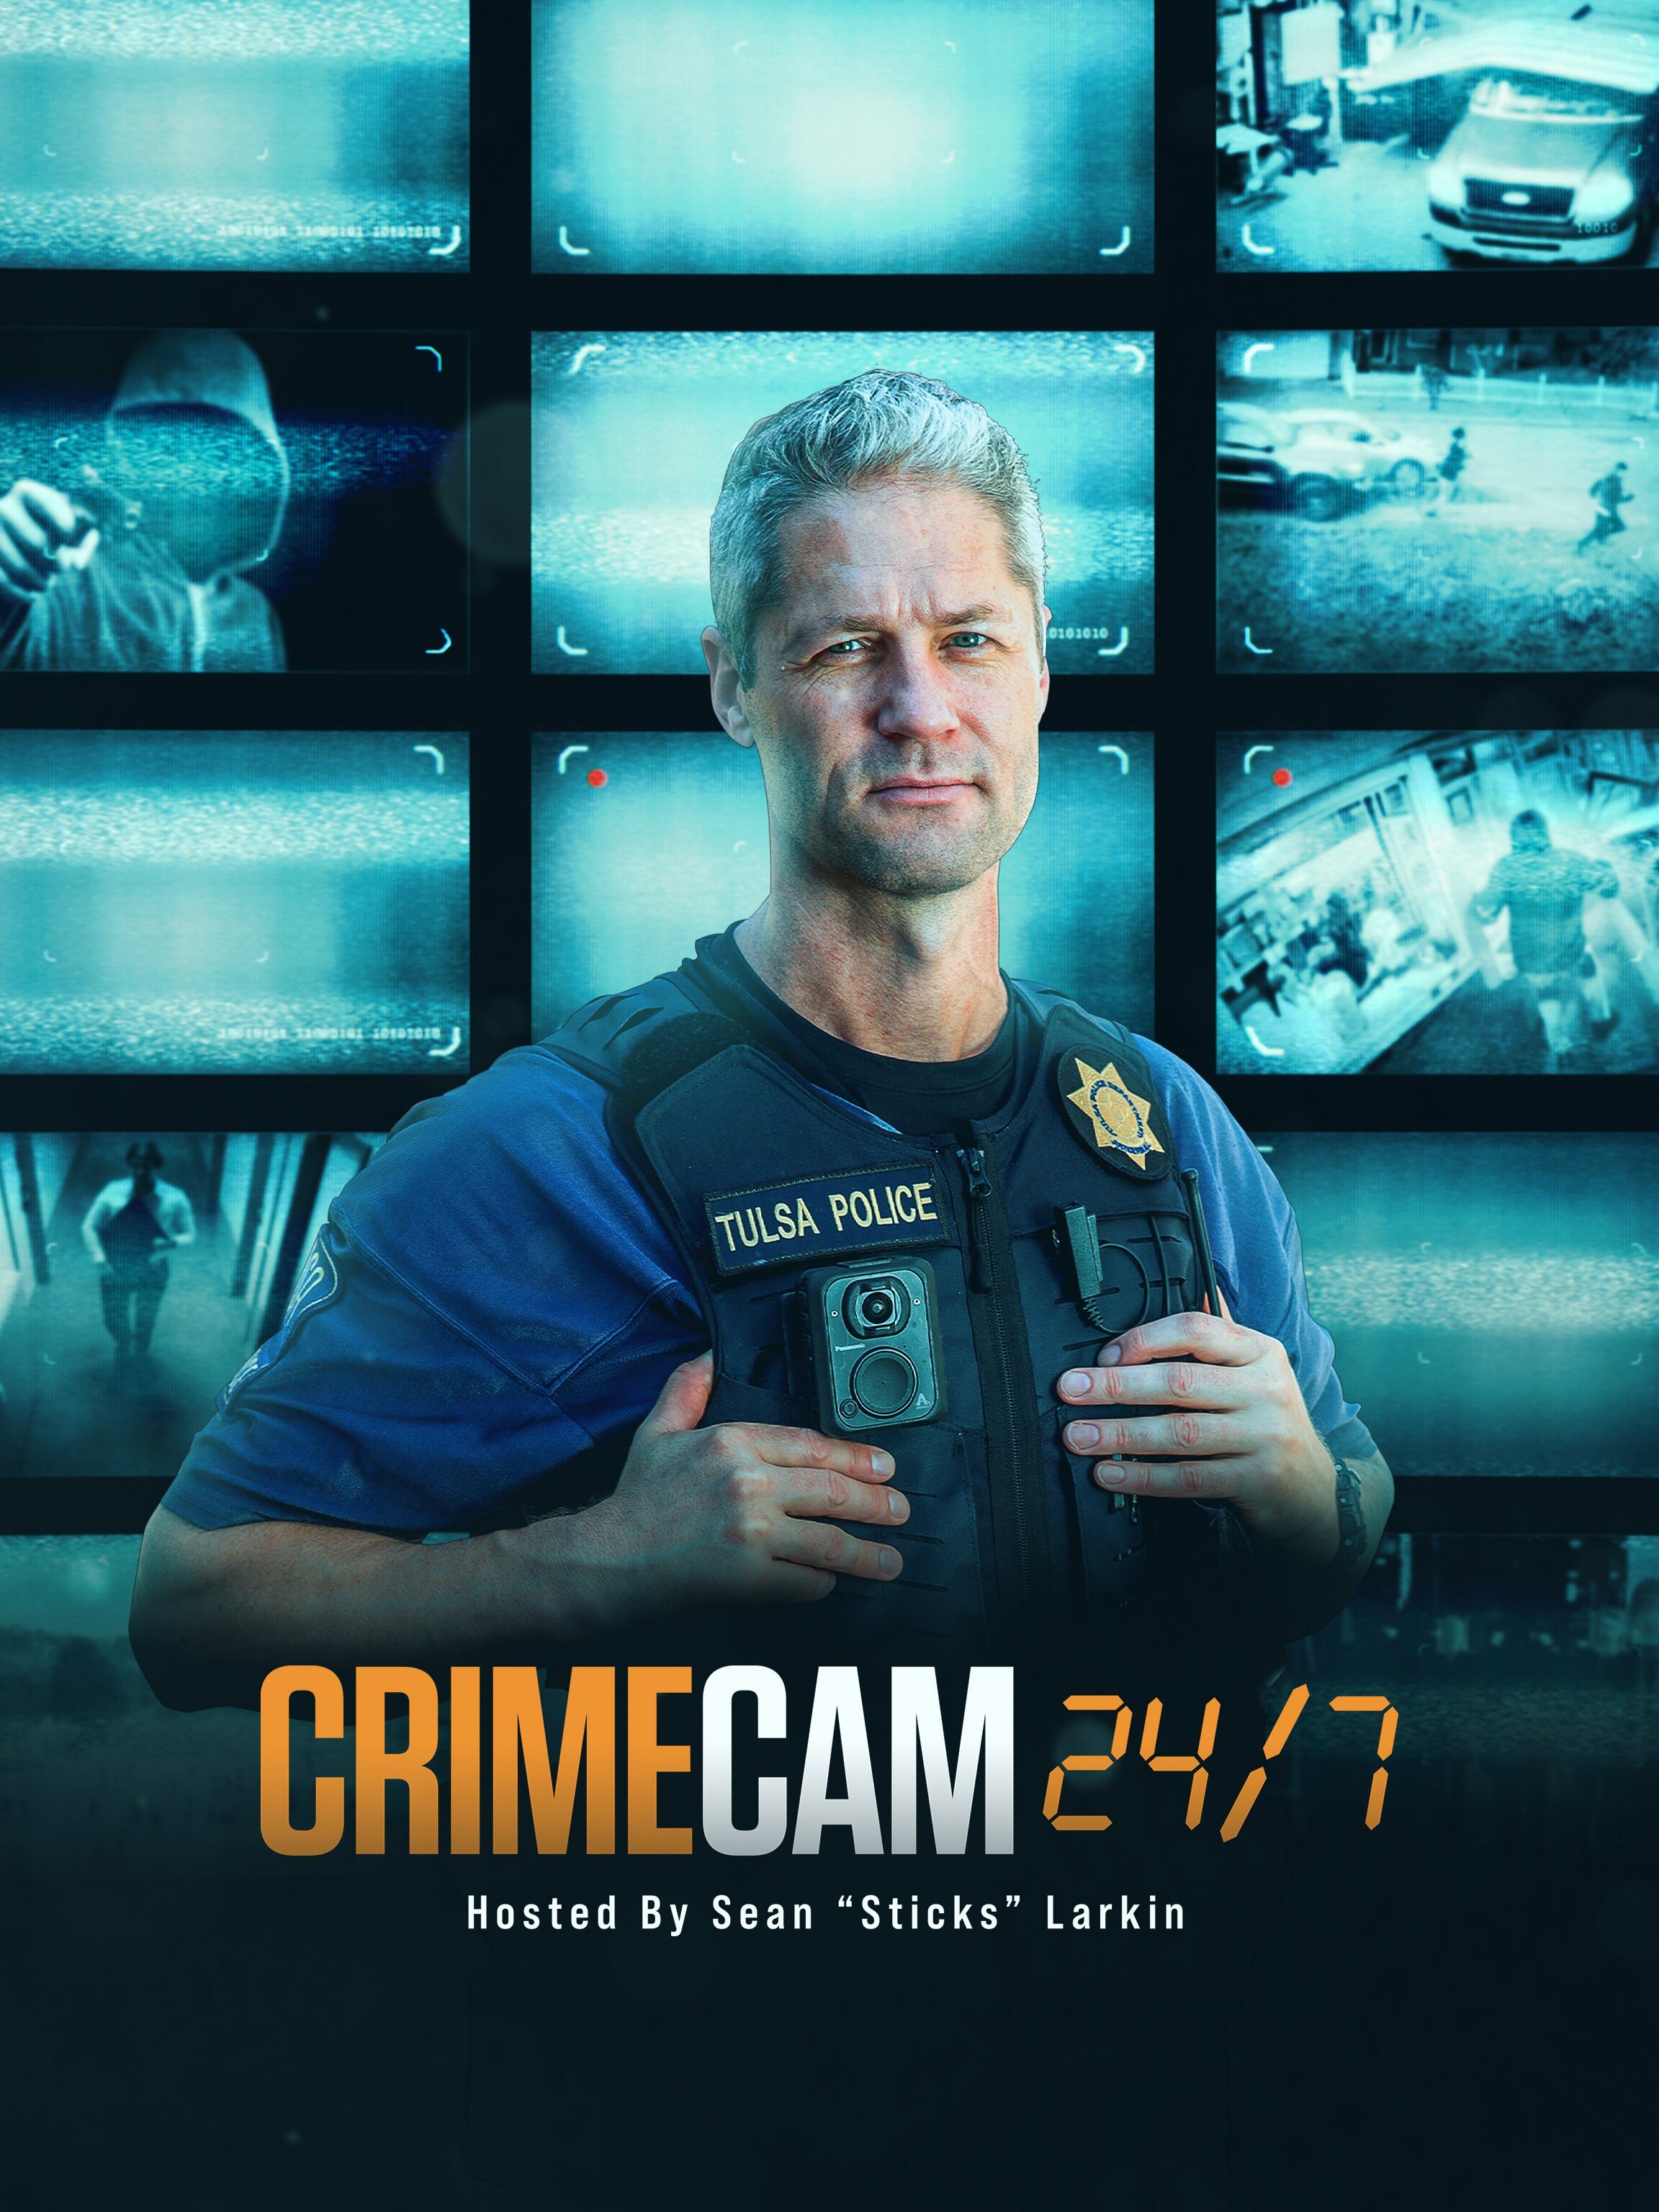 Crime Cam 24/7 ne zaman